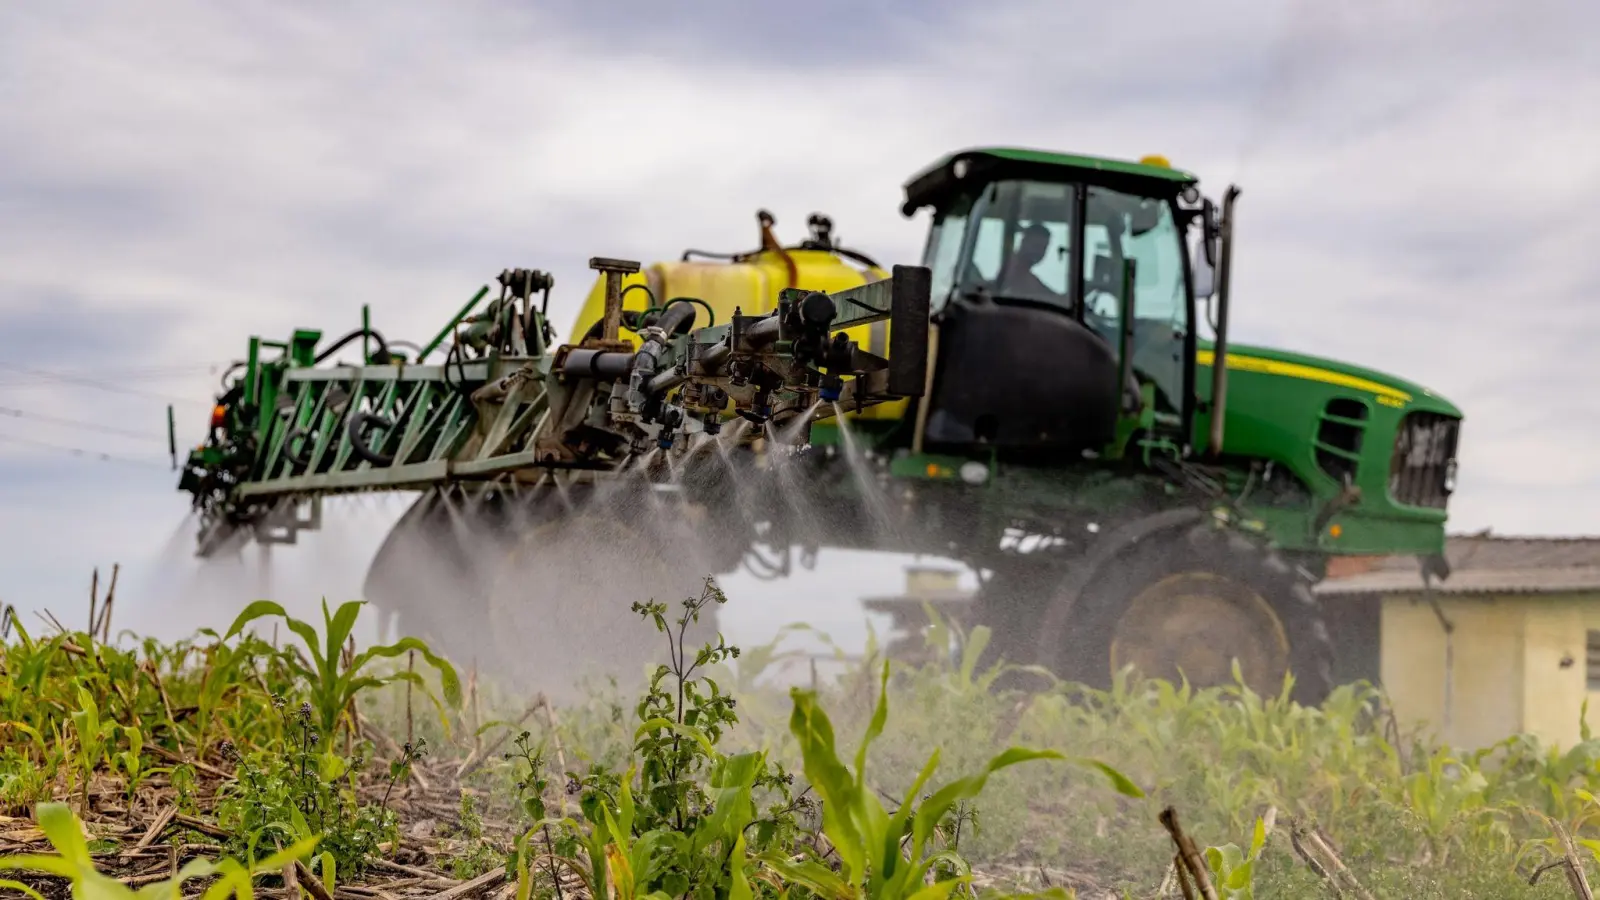 Düngemittel-Einsatz in der Landwirtschaft. Die weltweiten Ammoniak-Emmissionen gehen fast ausschließlich auf den Agrarsektor zurück. (Foto: Brunno Covello/dpa)